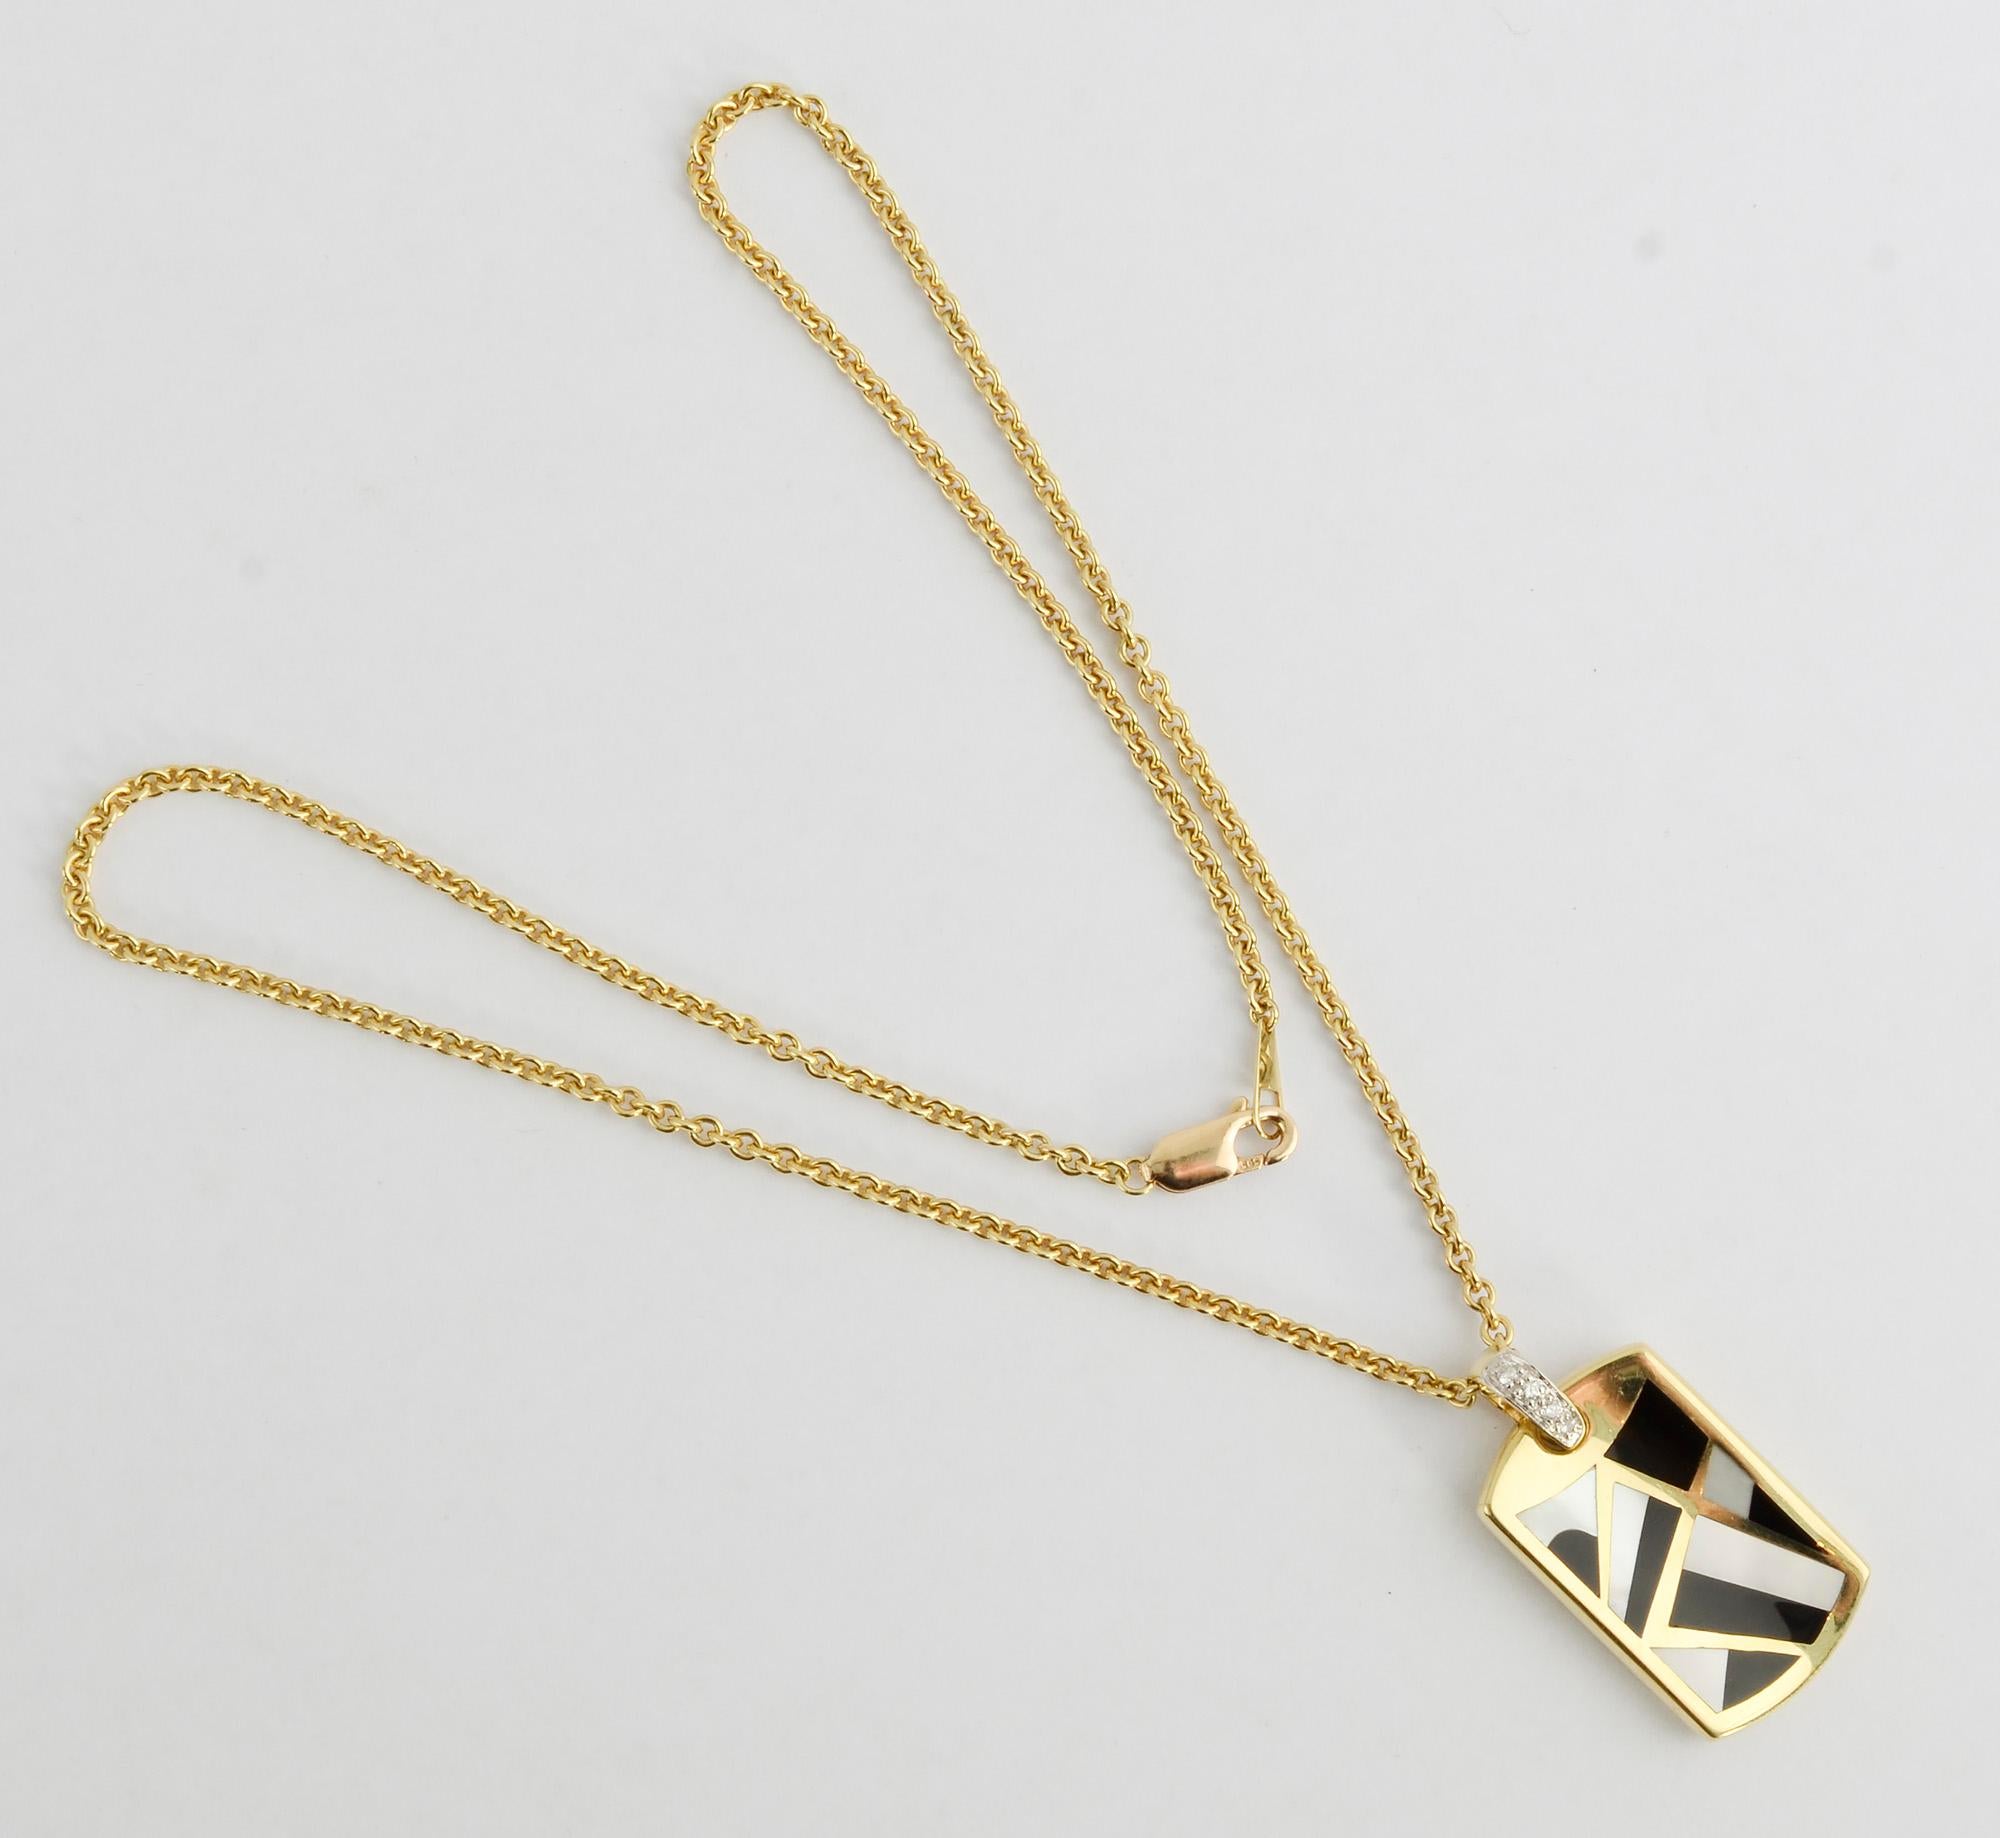 Geometrisch gestaltete Anhänger-Halskette von Asch Grossbardt mit der für sie typischen Verwendung von verschiedenen eingelegten Steinen. Der Anhänger besteht aus Perlmutt und schwarzem Onyx. Der Bügel ist mit Diamanten besetzt. Der Anhänger hat